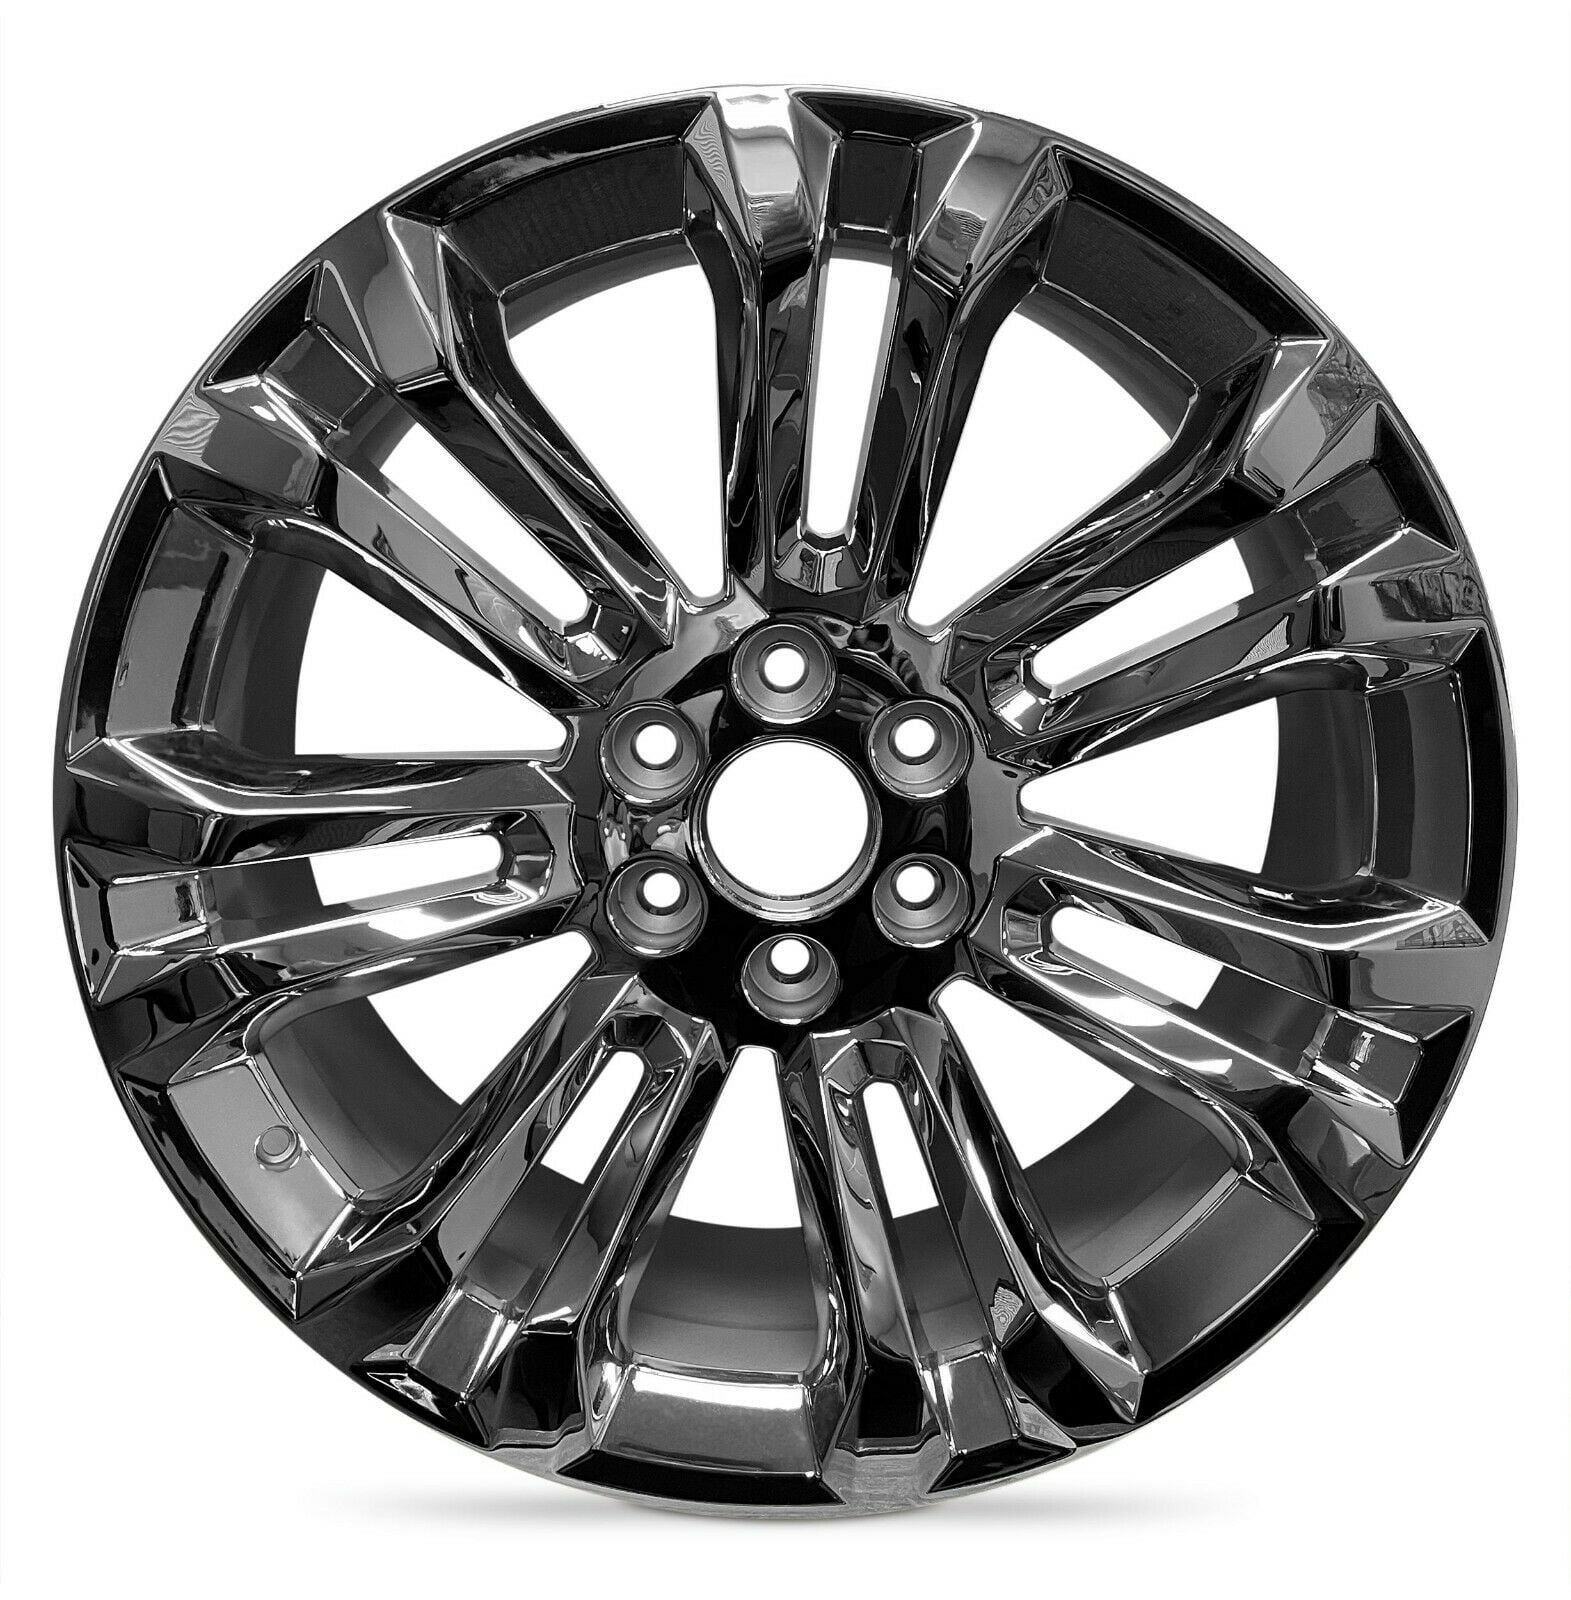 New Chrome Wheel Rim for 2015-2020 Cadillac Escalade 22 inch 6 Lug Chrome  Fits R22 Tire - Walmart.com